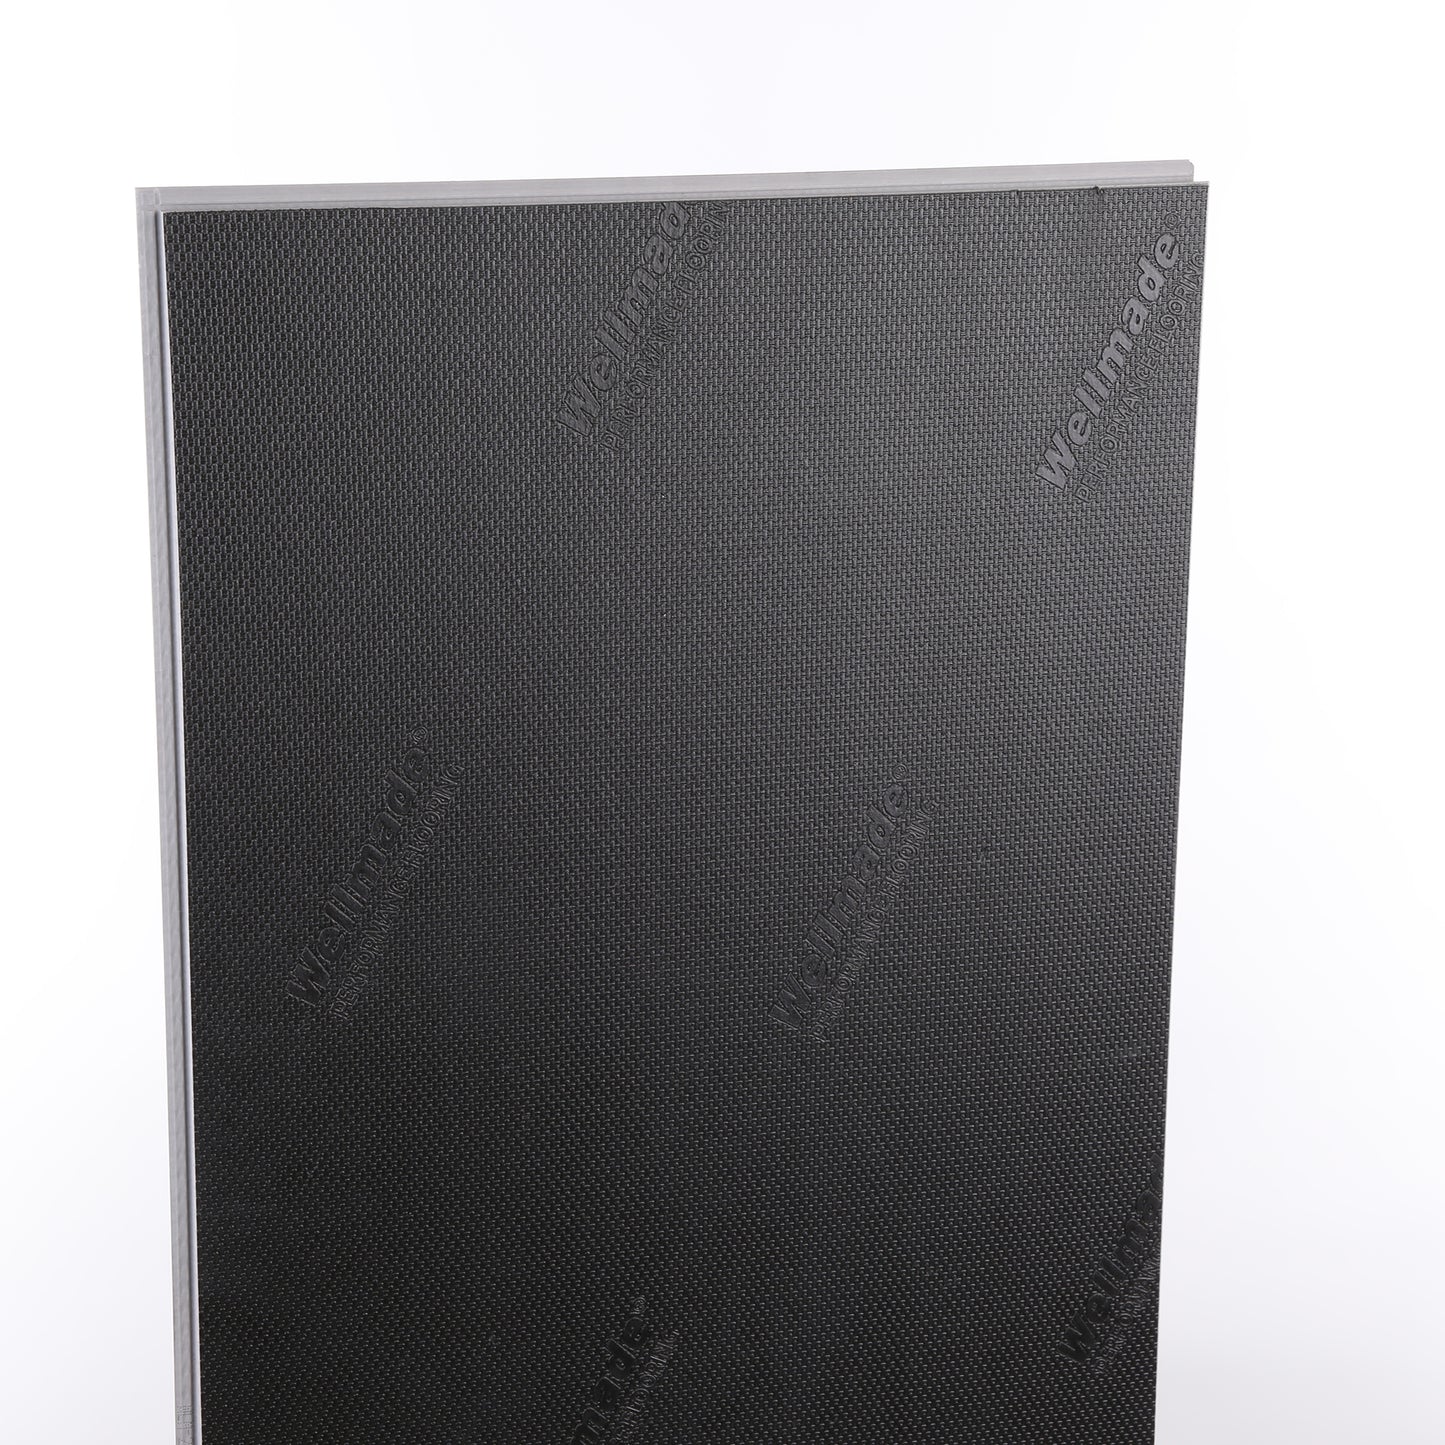 6mm Piazza Travertine HDPC® Waterproof Luxury Vinyl Tile Flooring 12 in. Wide x 24 in. Long